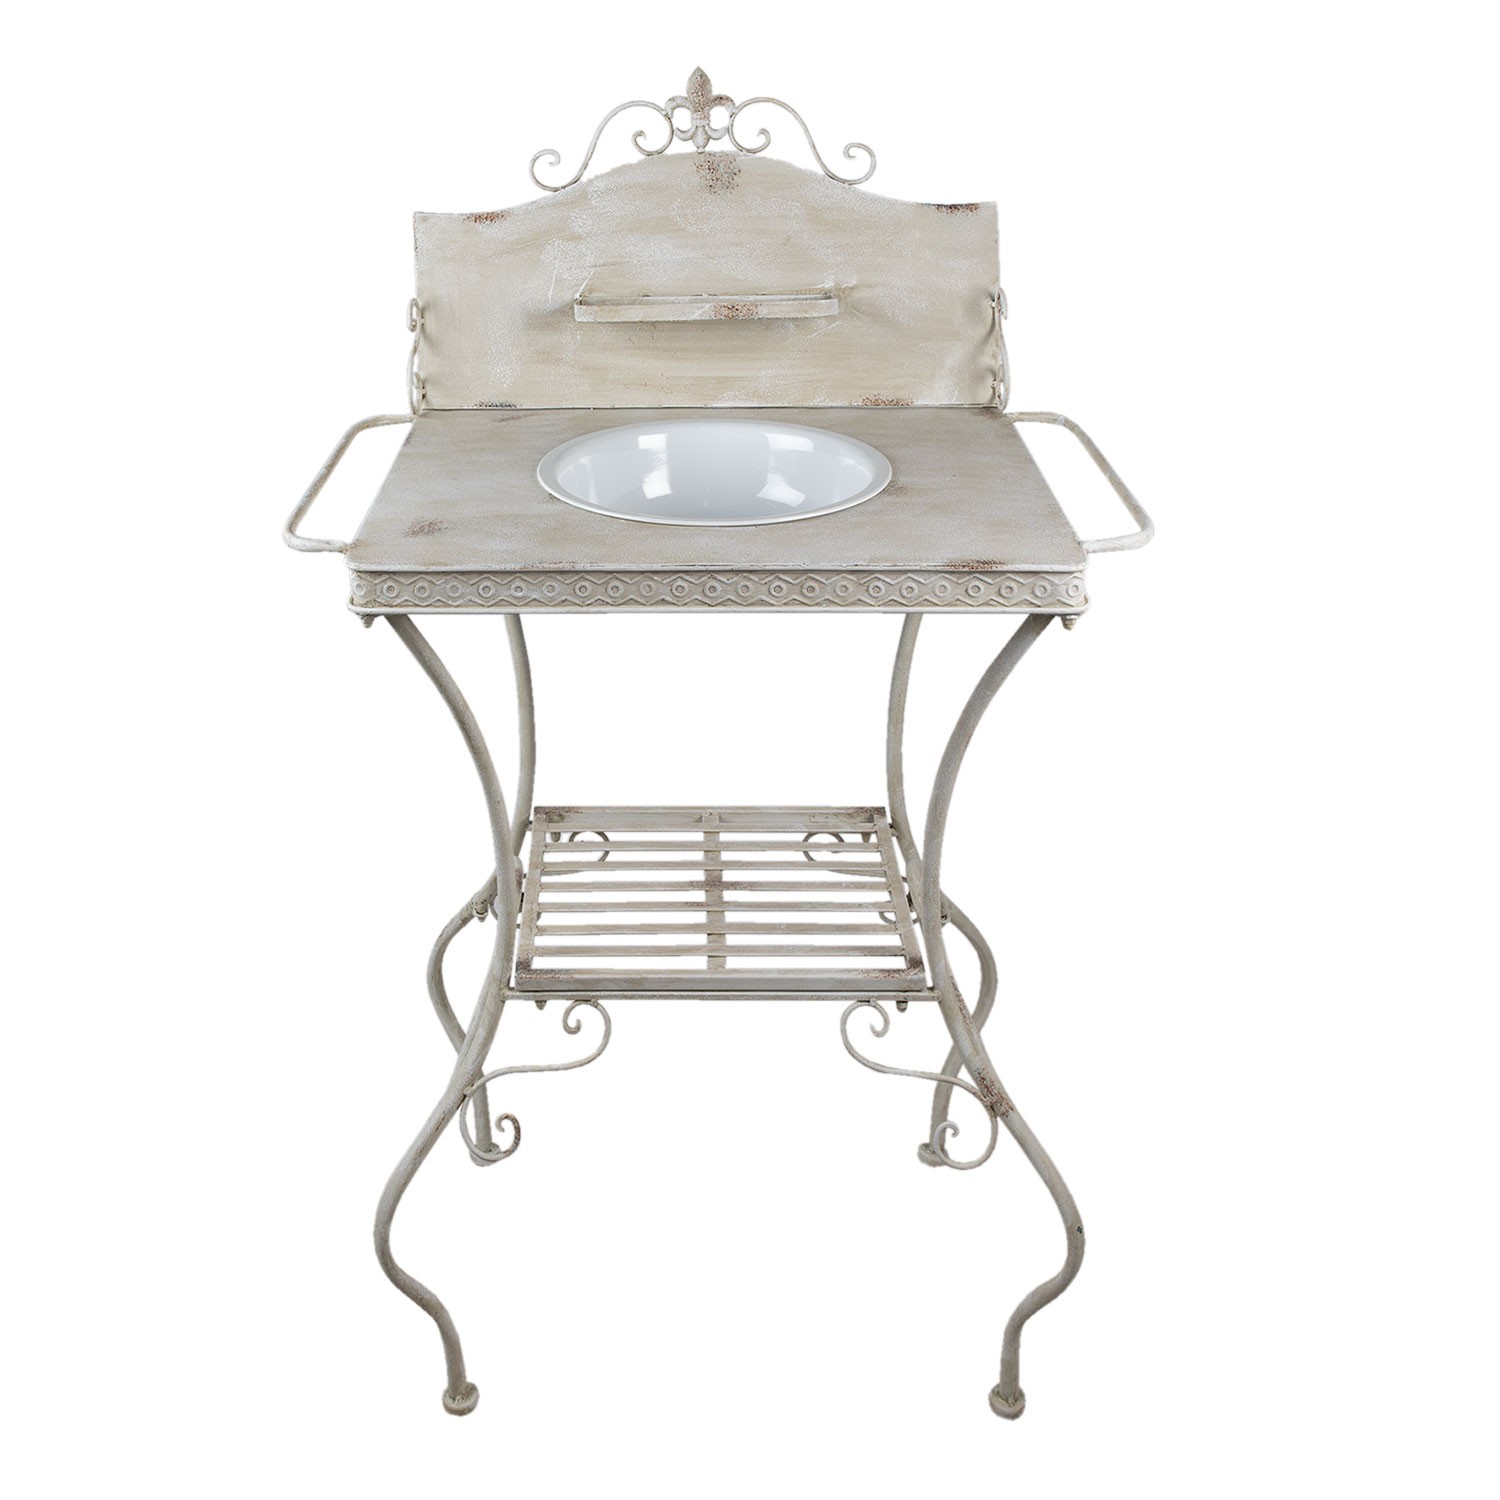 Béžový antik kovový stojan s patinou a umyvadlem ve vintage stylu - 72*48*114 cm Clayre & Eef